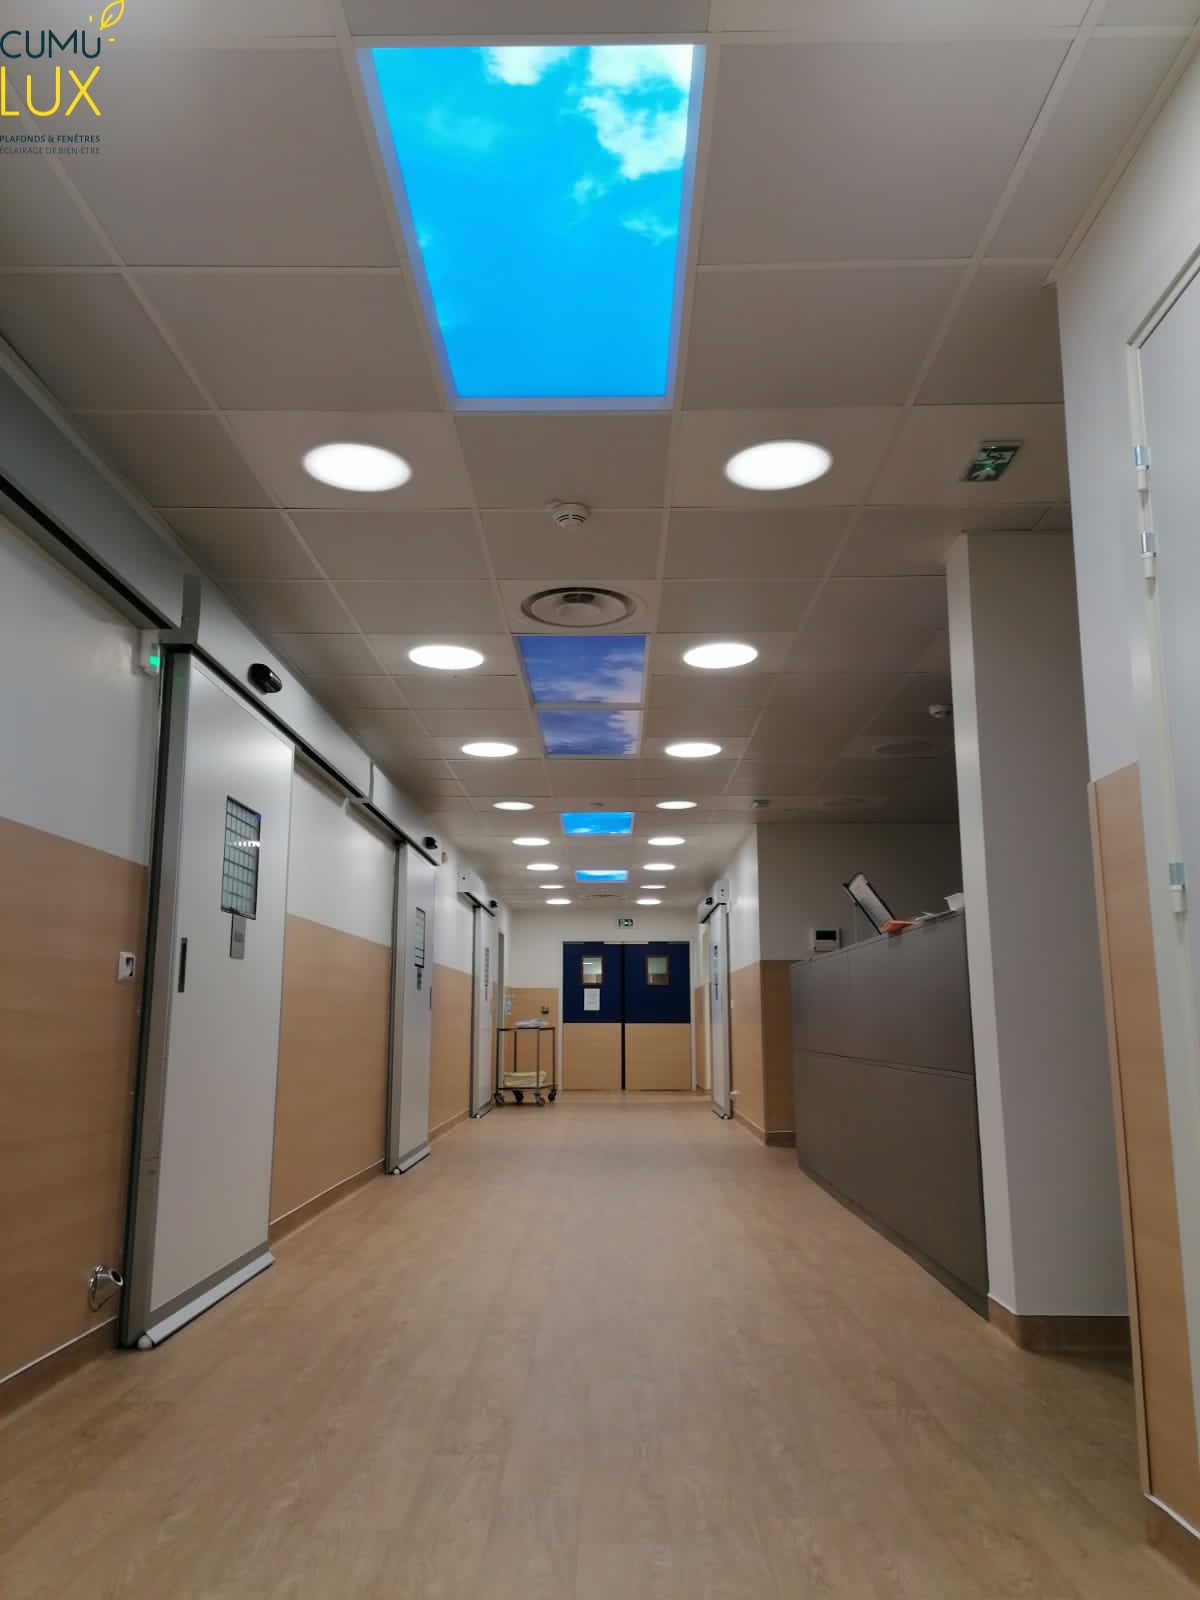 Faux plafond de six dalles LED pour éclairer un couloir dans un service de maternité.